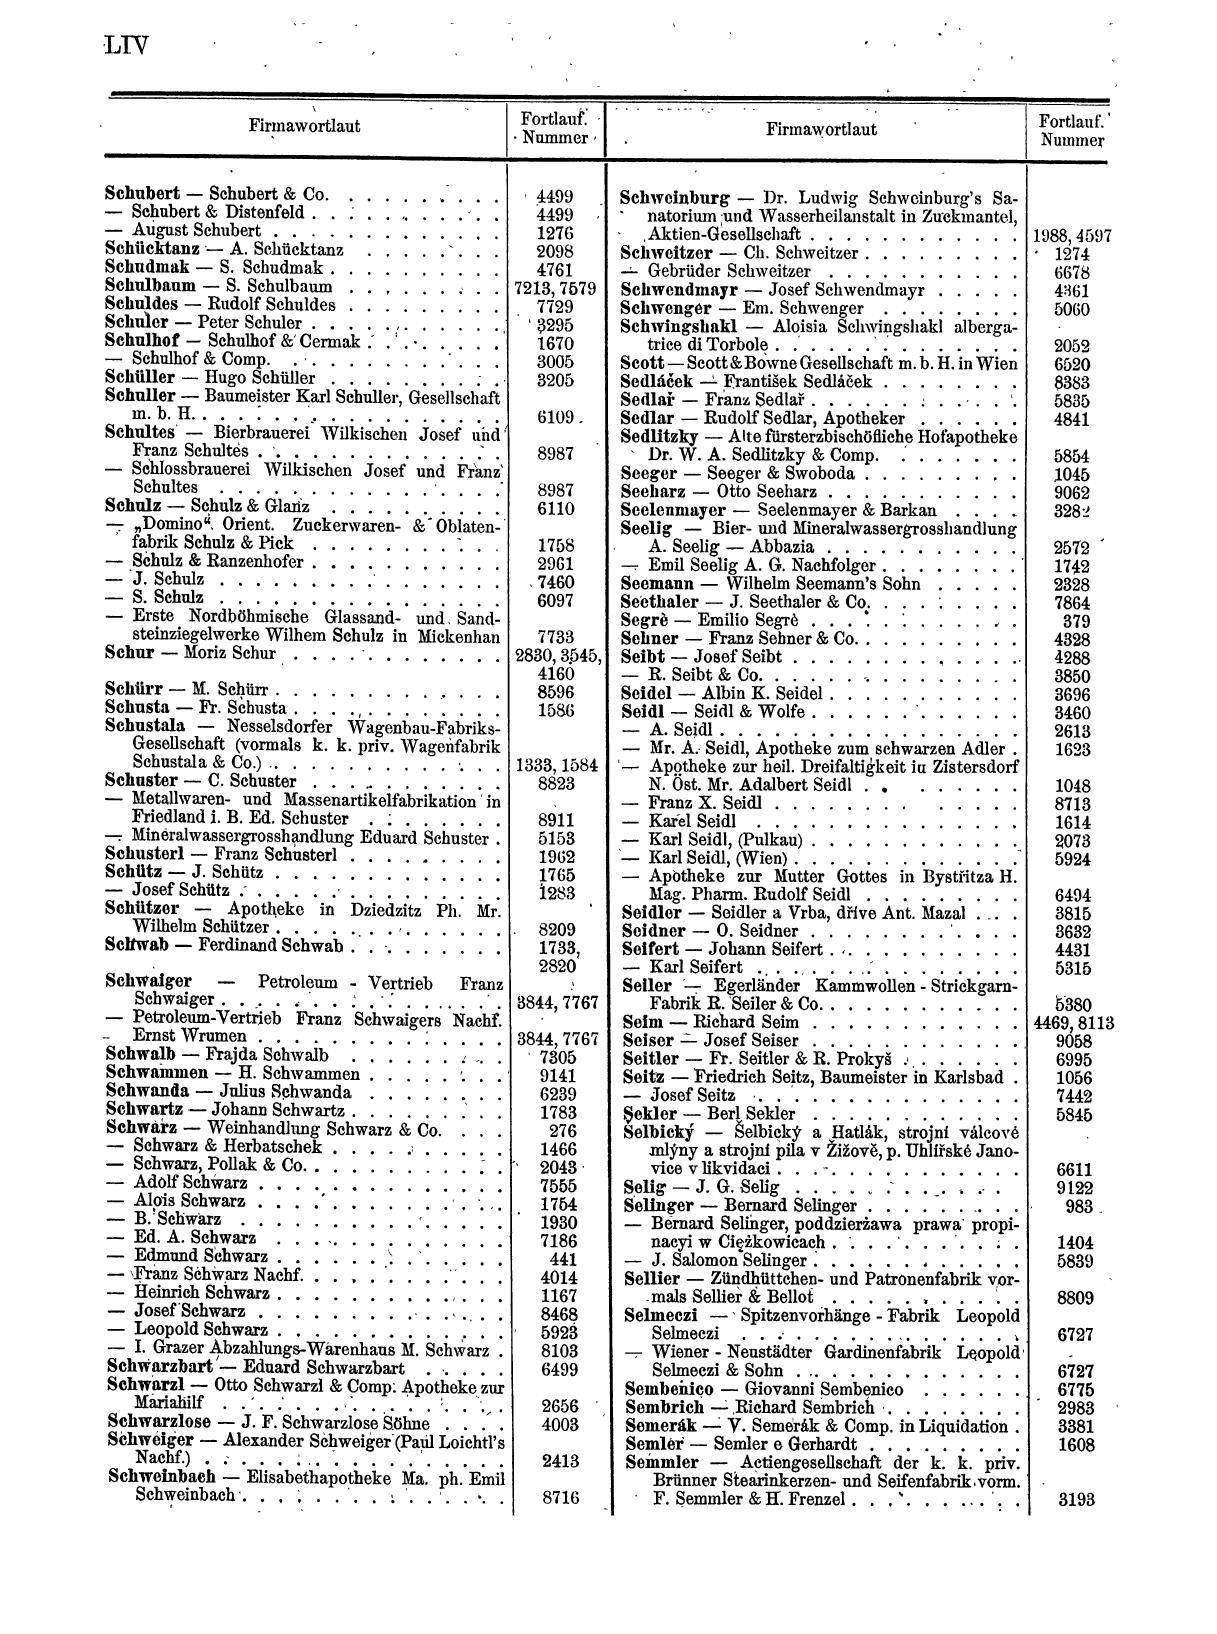 Zentralblatt für die Eintragungen in das Handelsregister 1913, Teil 1 - Seite 62